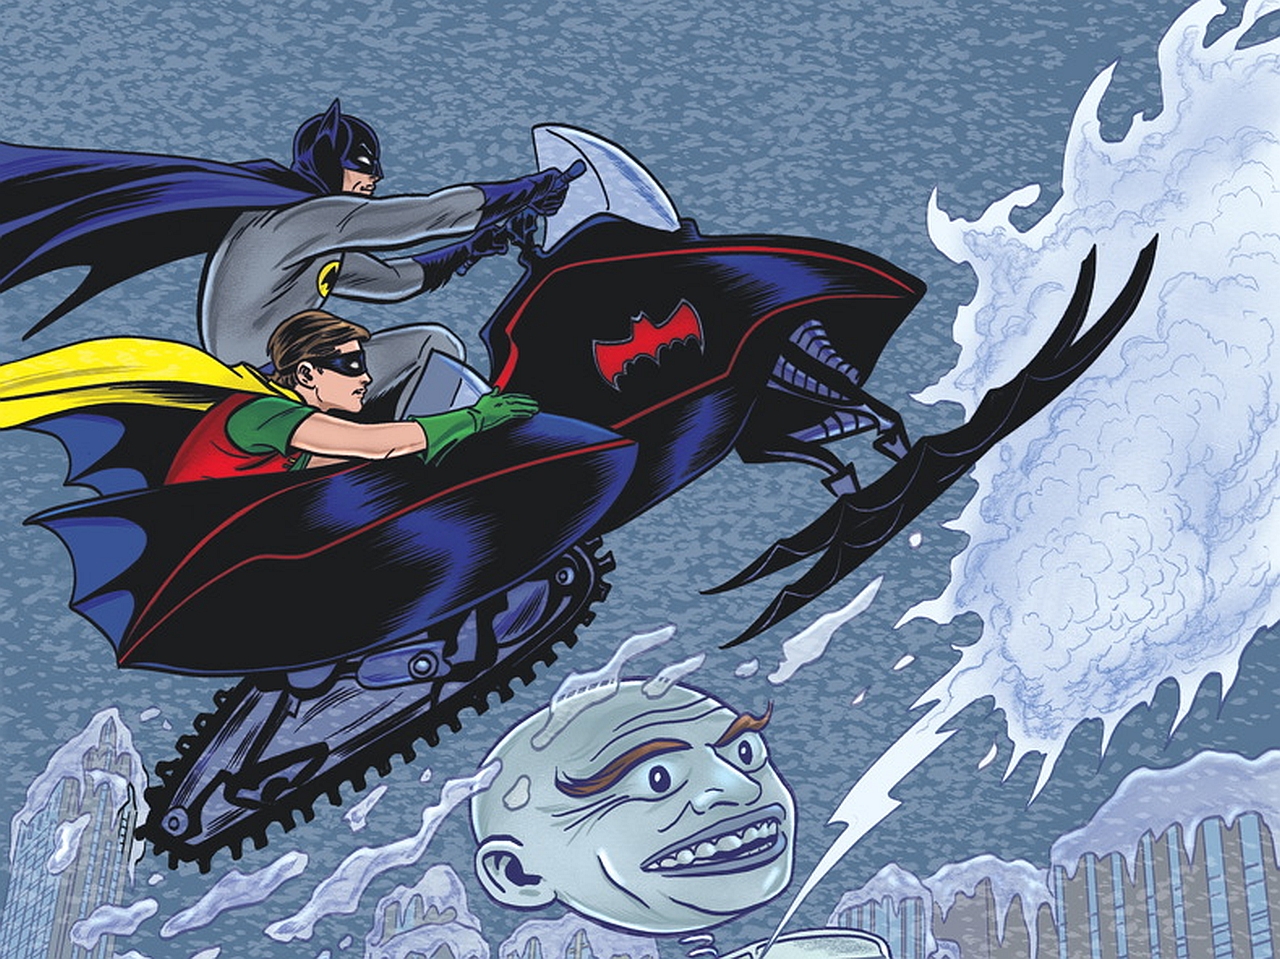 Скачать обои бесплатно Комиксы, Бэтмен, Робин (Комиксы Dc), Бэтмен 66 картинка на рабочий стол ПК